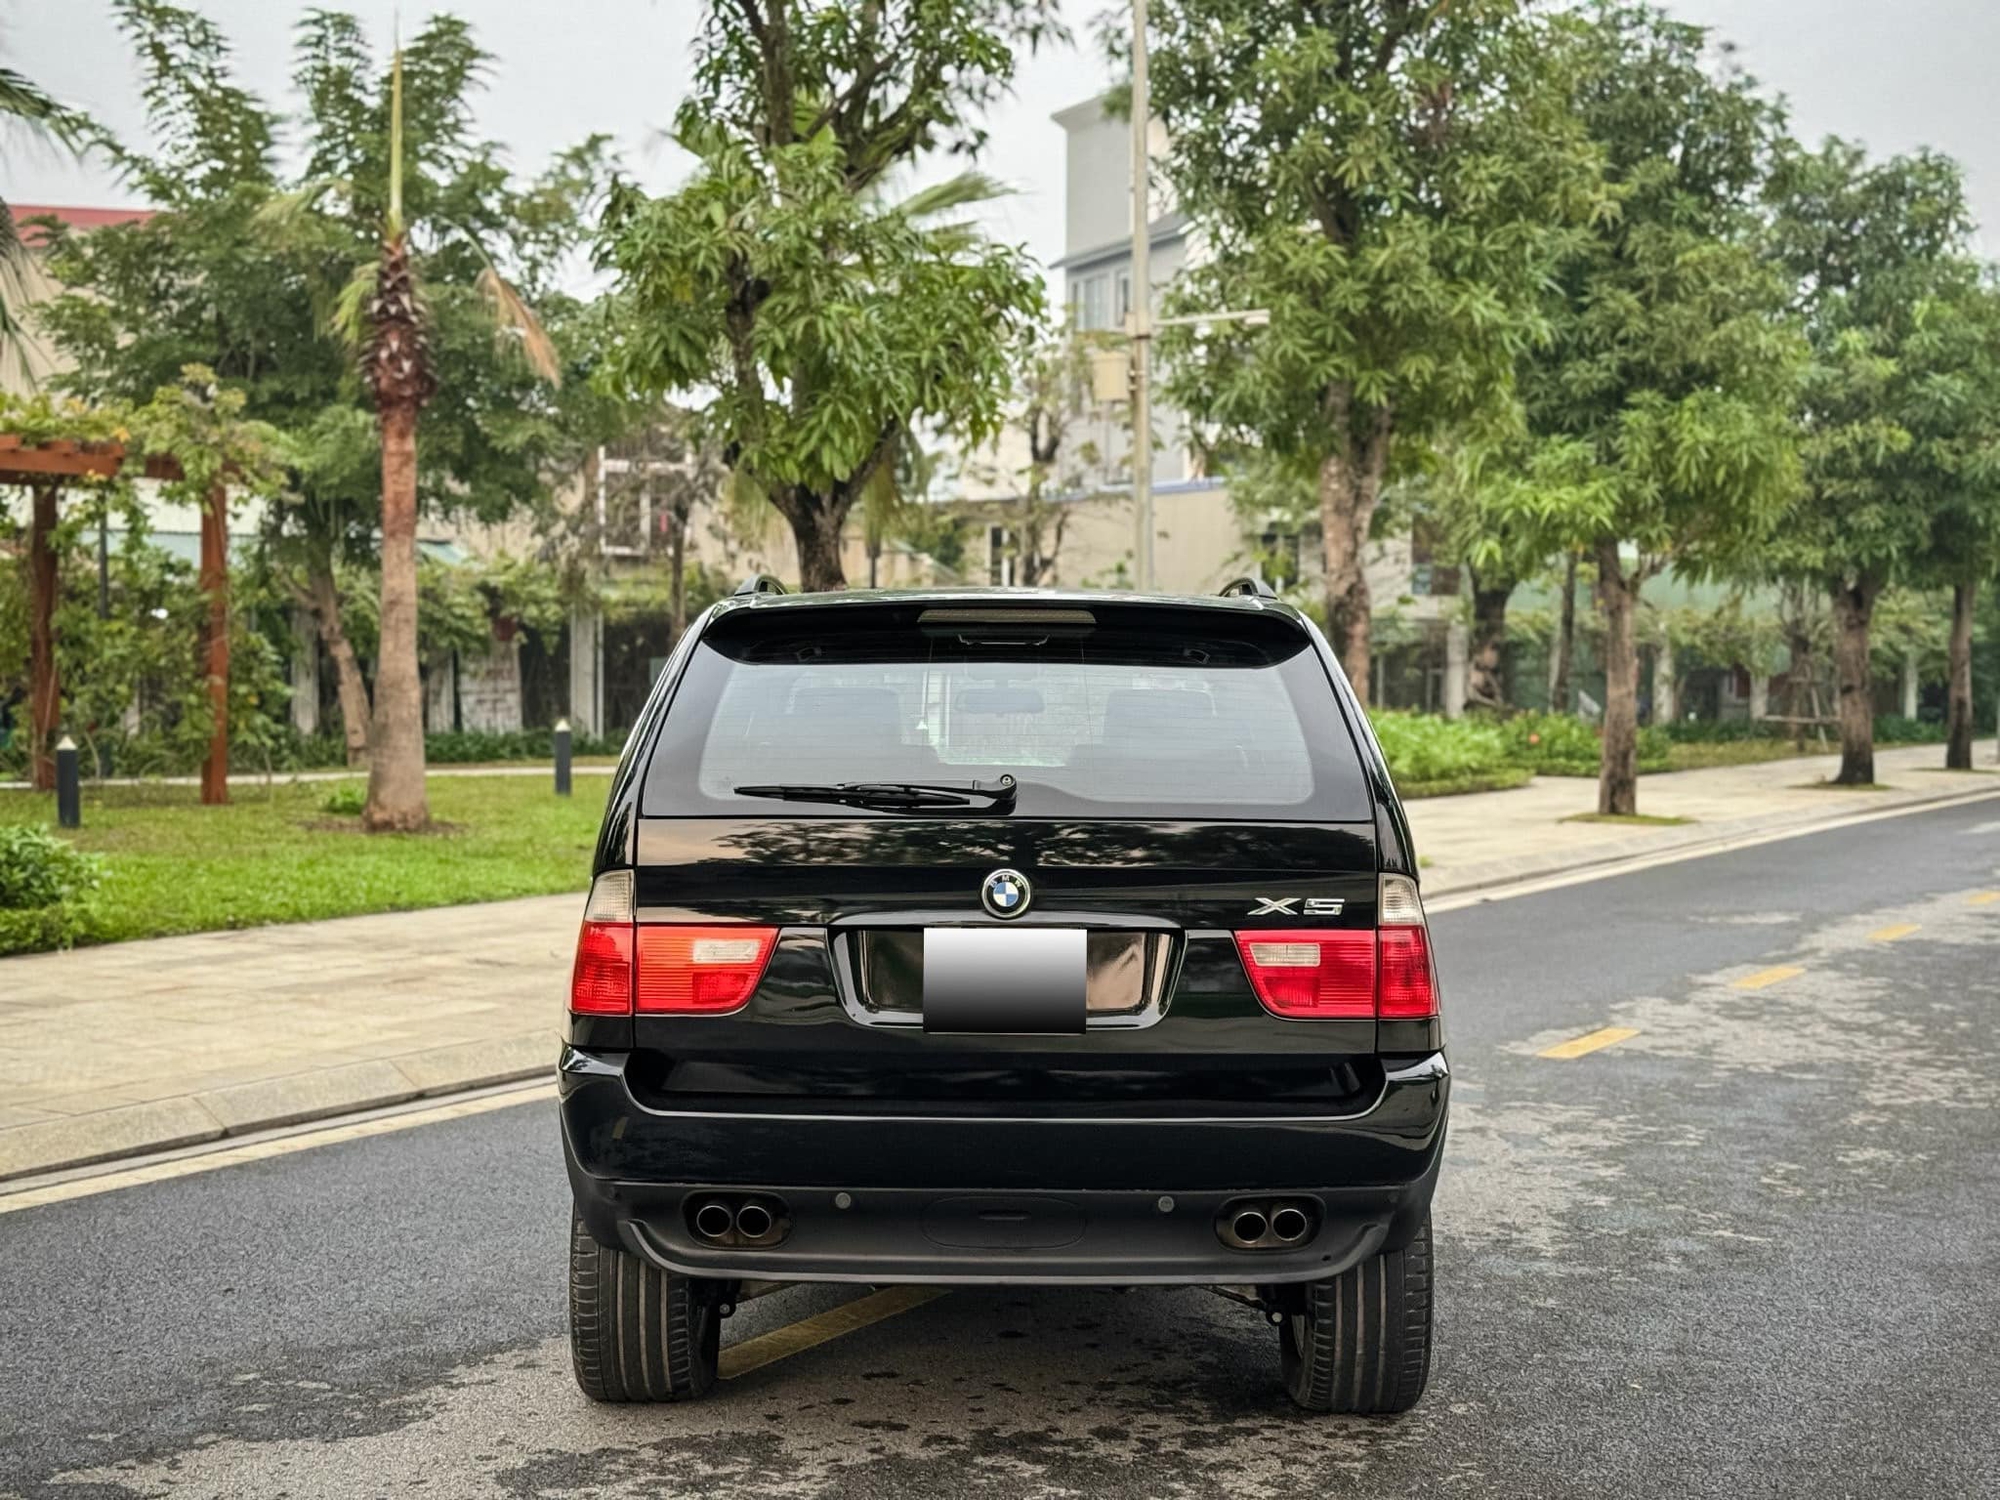 Rao BMW X5 chống đạn giá 600 triệu, người bán chia sẻ: ‘Xe độc nhất Việt Nam, chuyên phục vụ chủ tịch’- Ảnh 4.